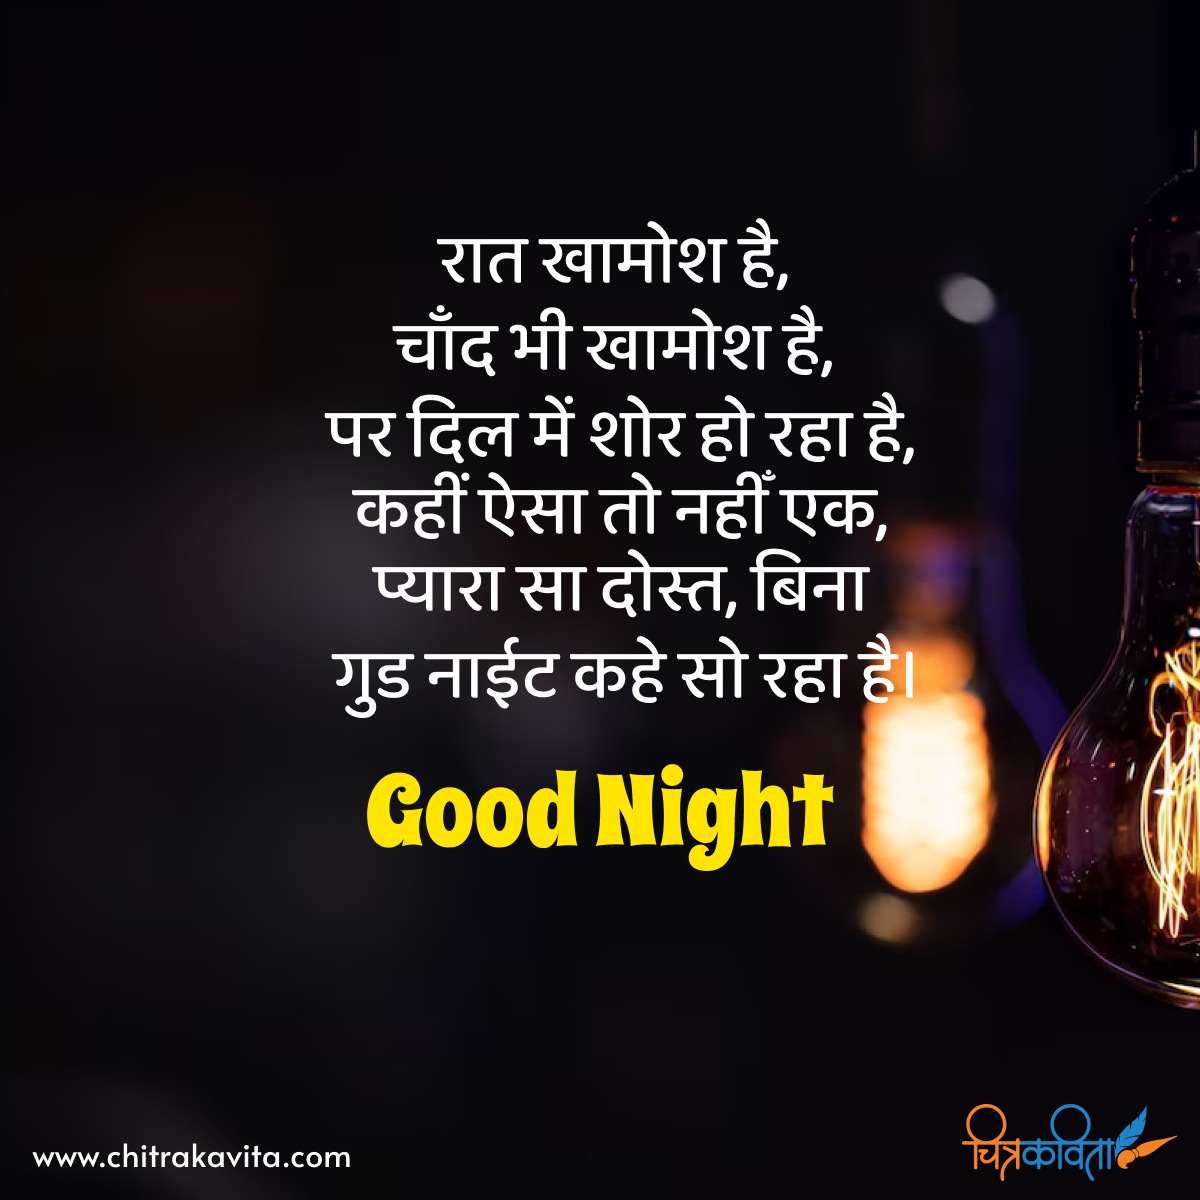 hindi good night quotes, good night status in hindi, hindi good night status messages, good night shayari